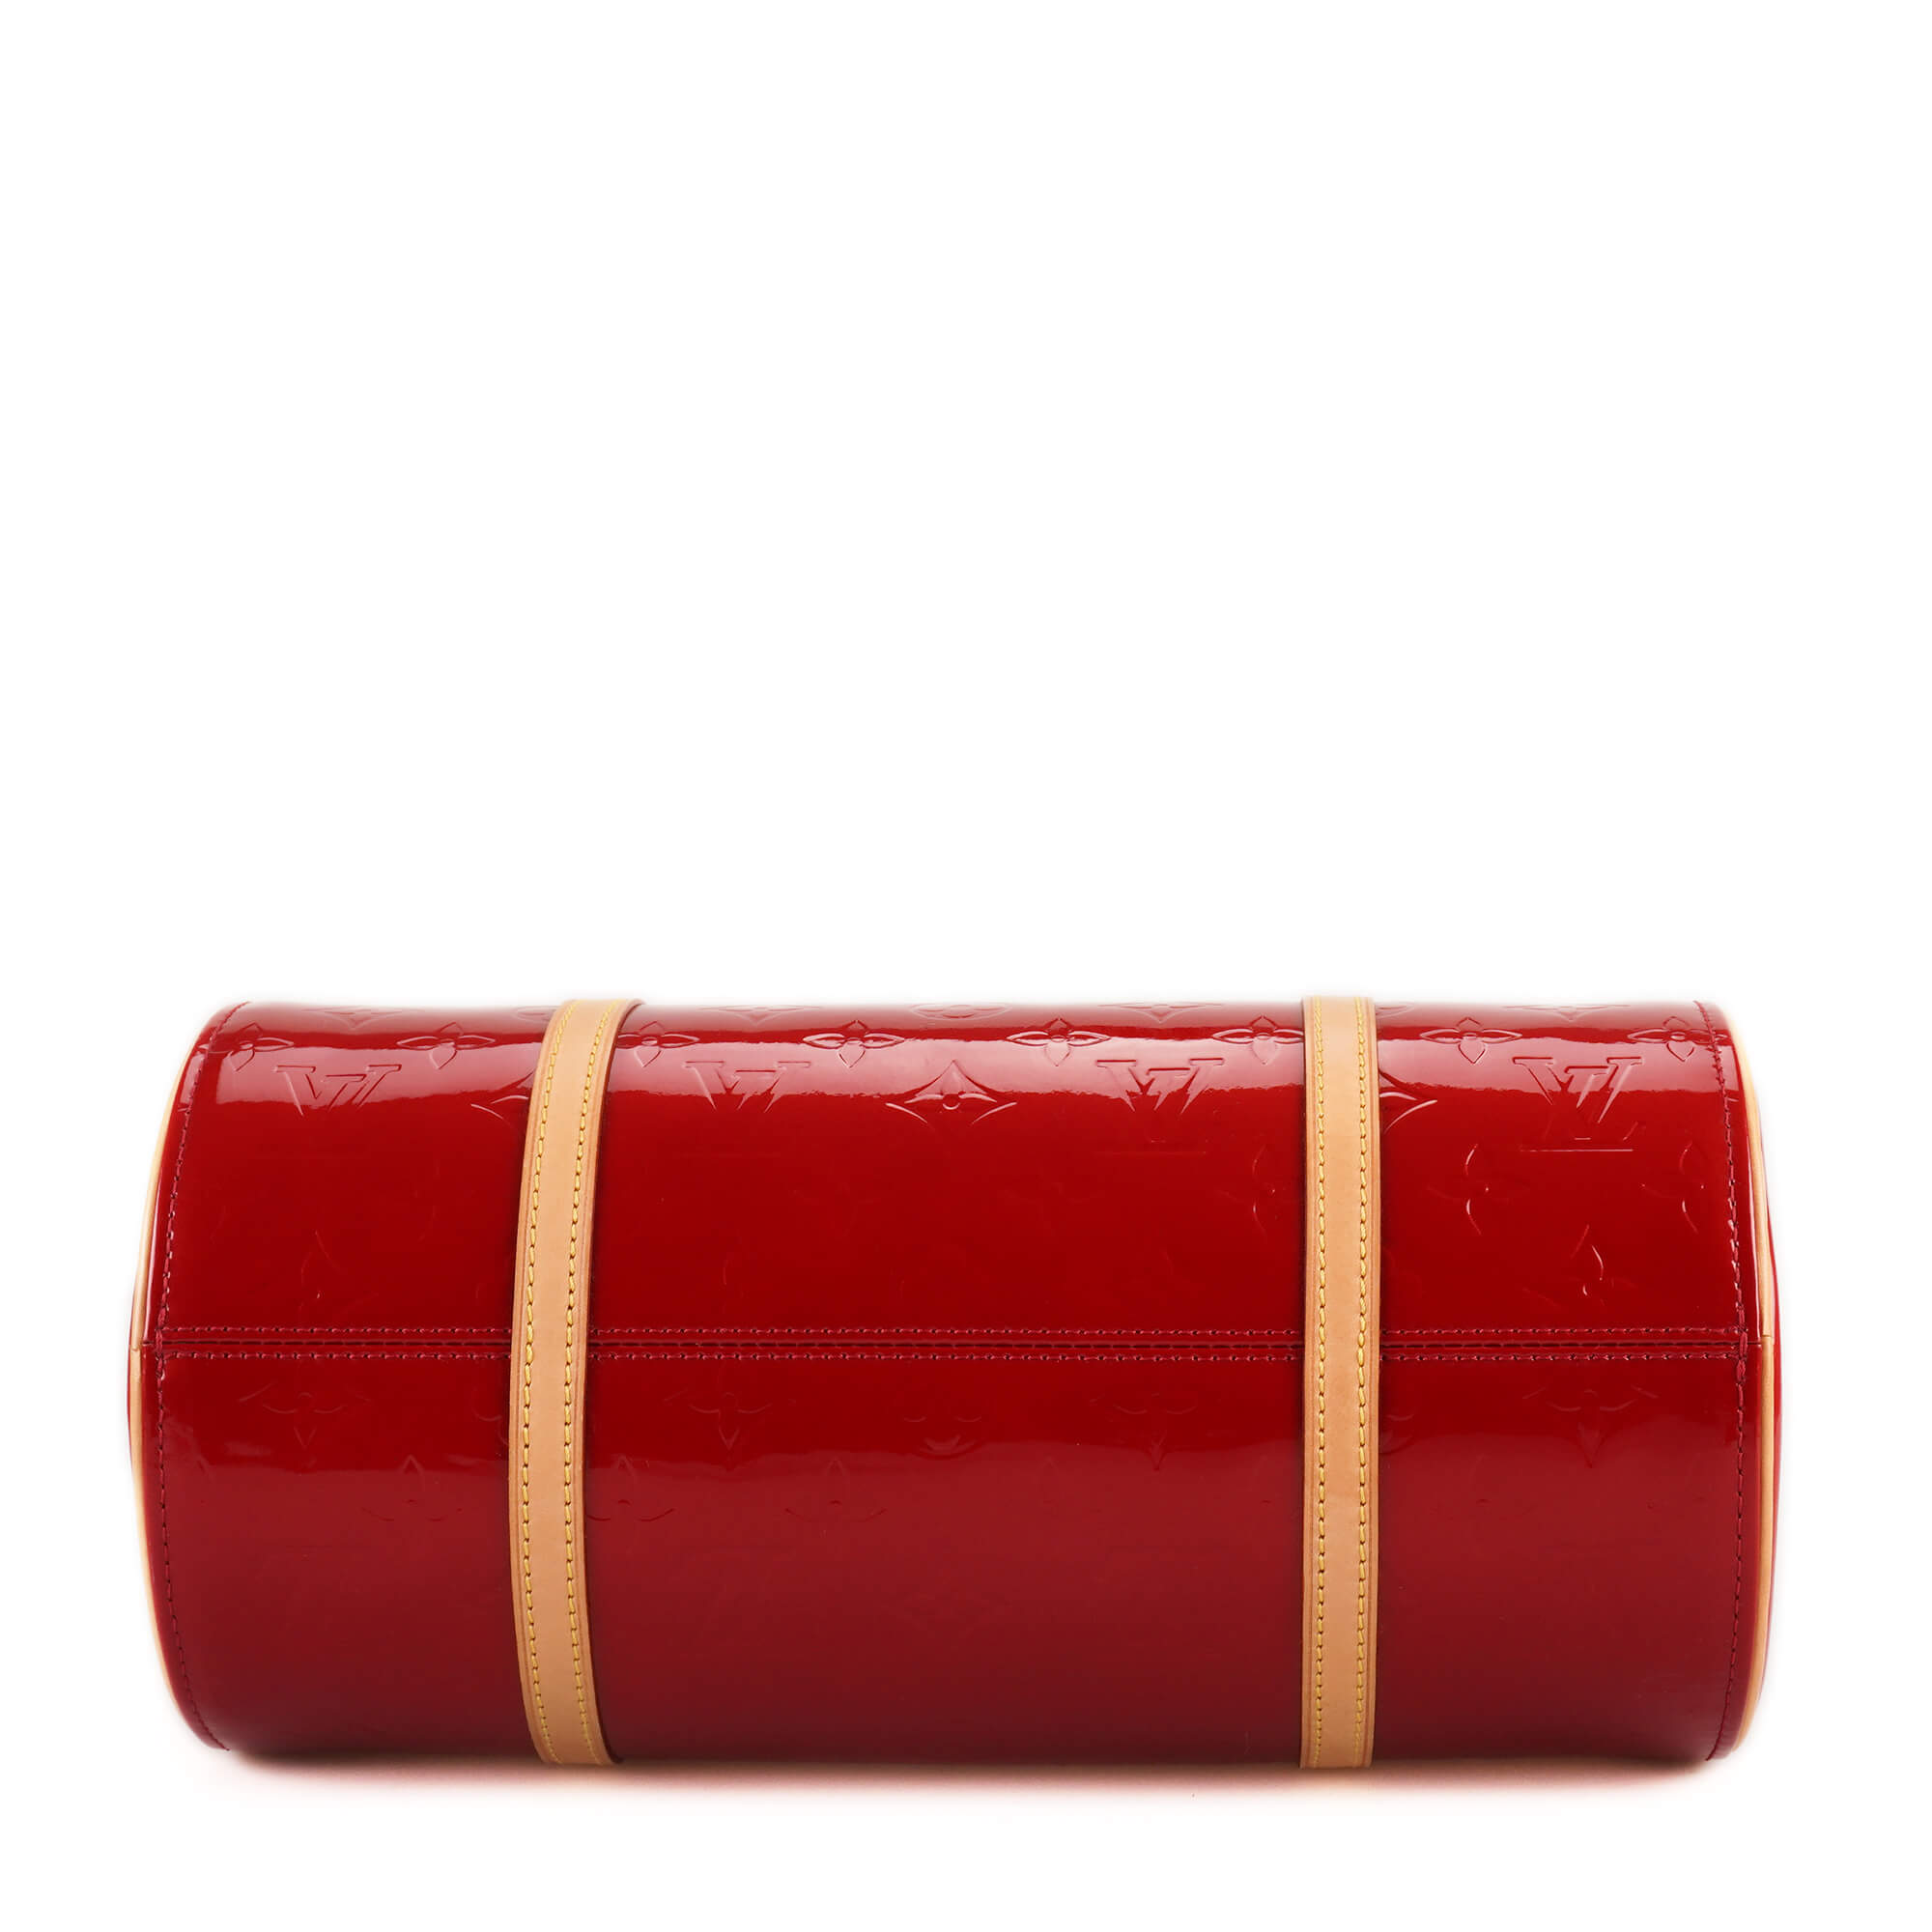 Louis Vuitton - Red Monogram Vernis Leather Papillon Bag